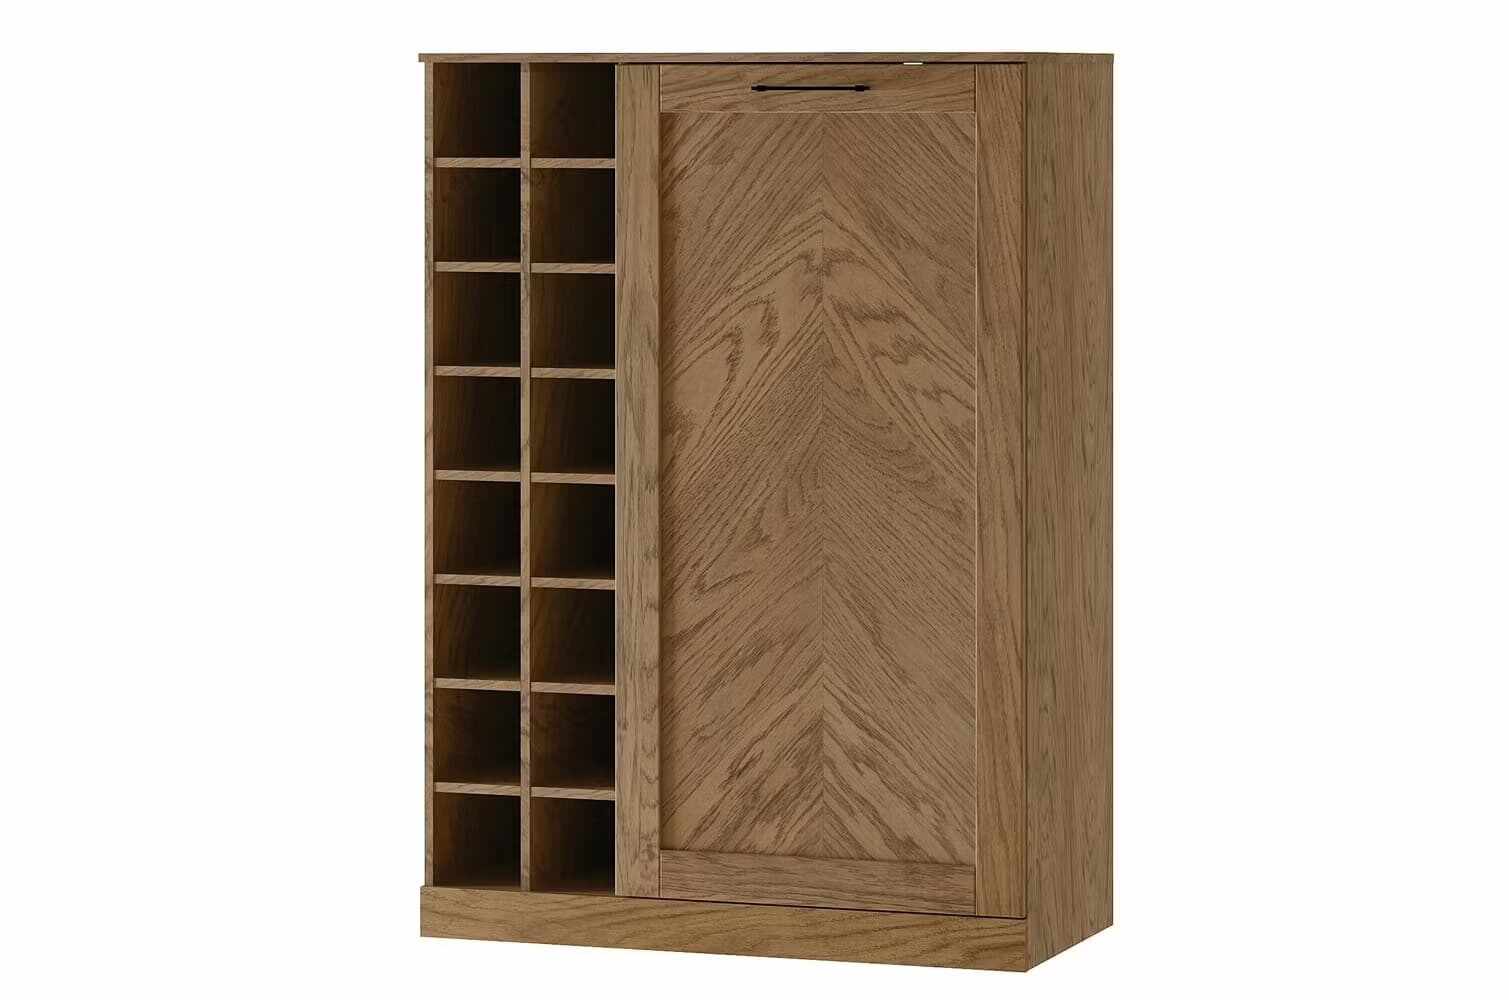 Cabinet din pal, furnir si lemn, cu 1 usa si suport sticle, Cozy 15 Stejar Rustic, l100xA50xH140 cm